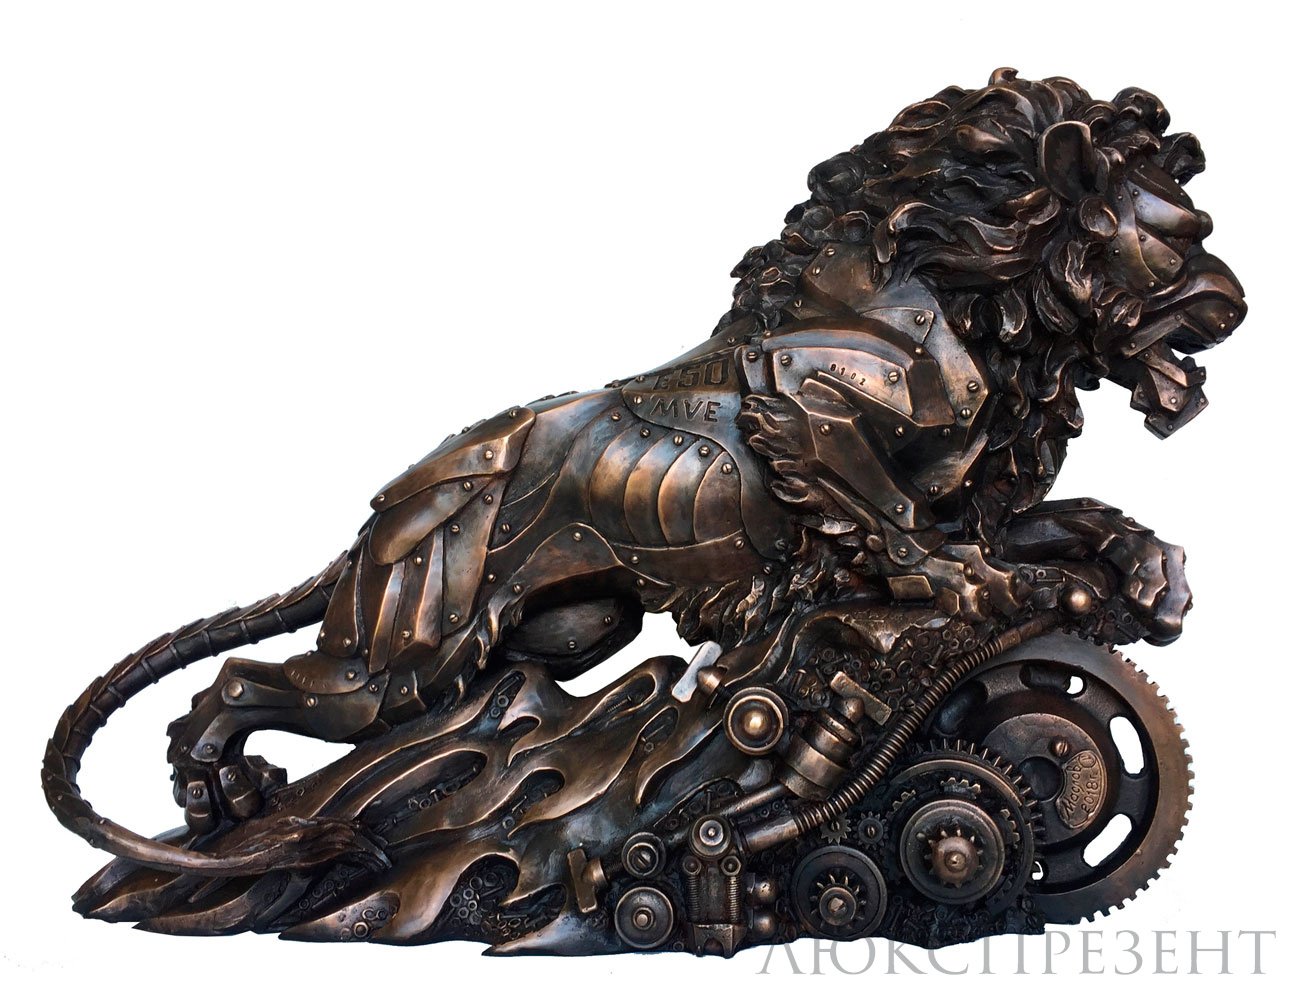 Авторская скульптура Лев из бронзы